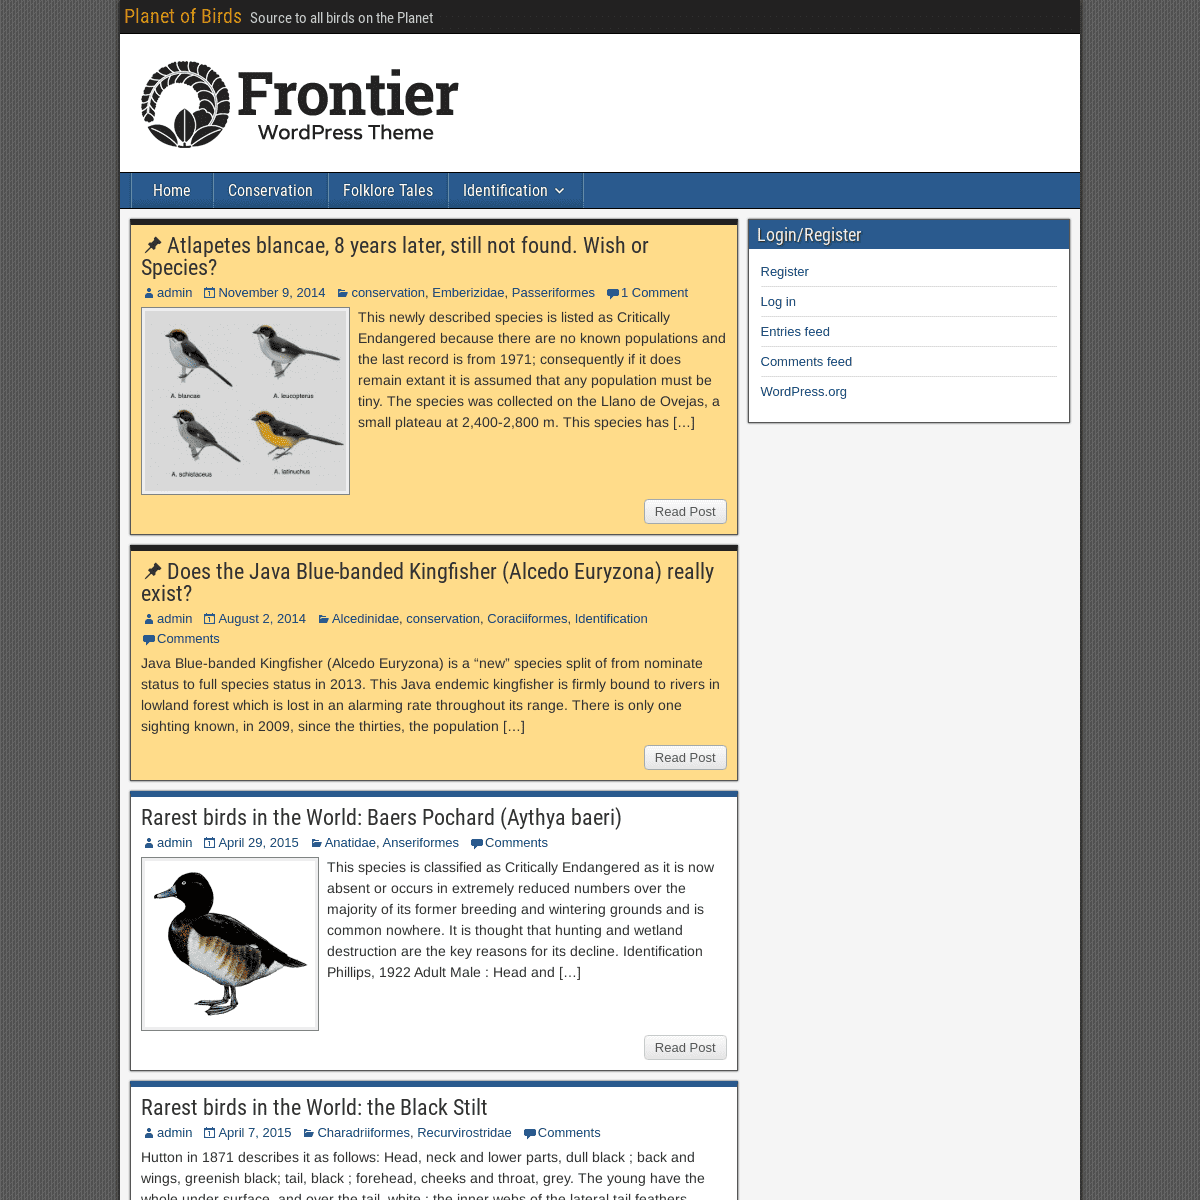 A complete backup of https://planetofbirds.com